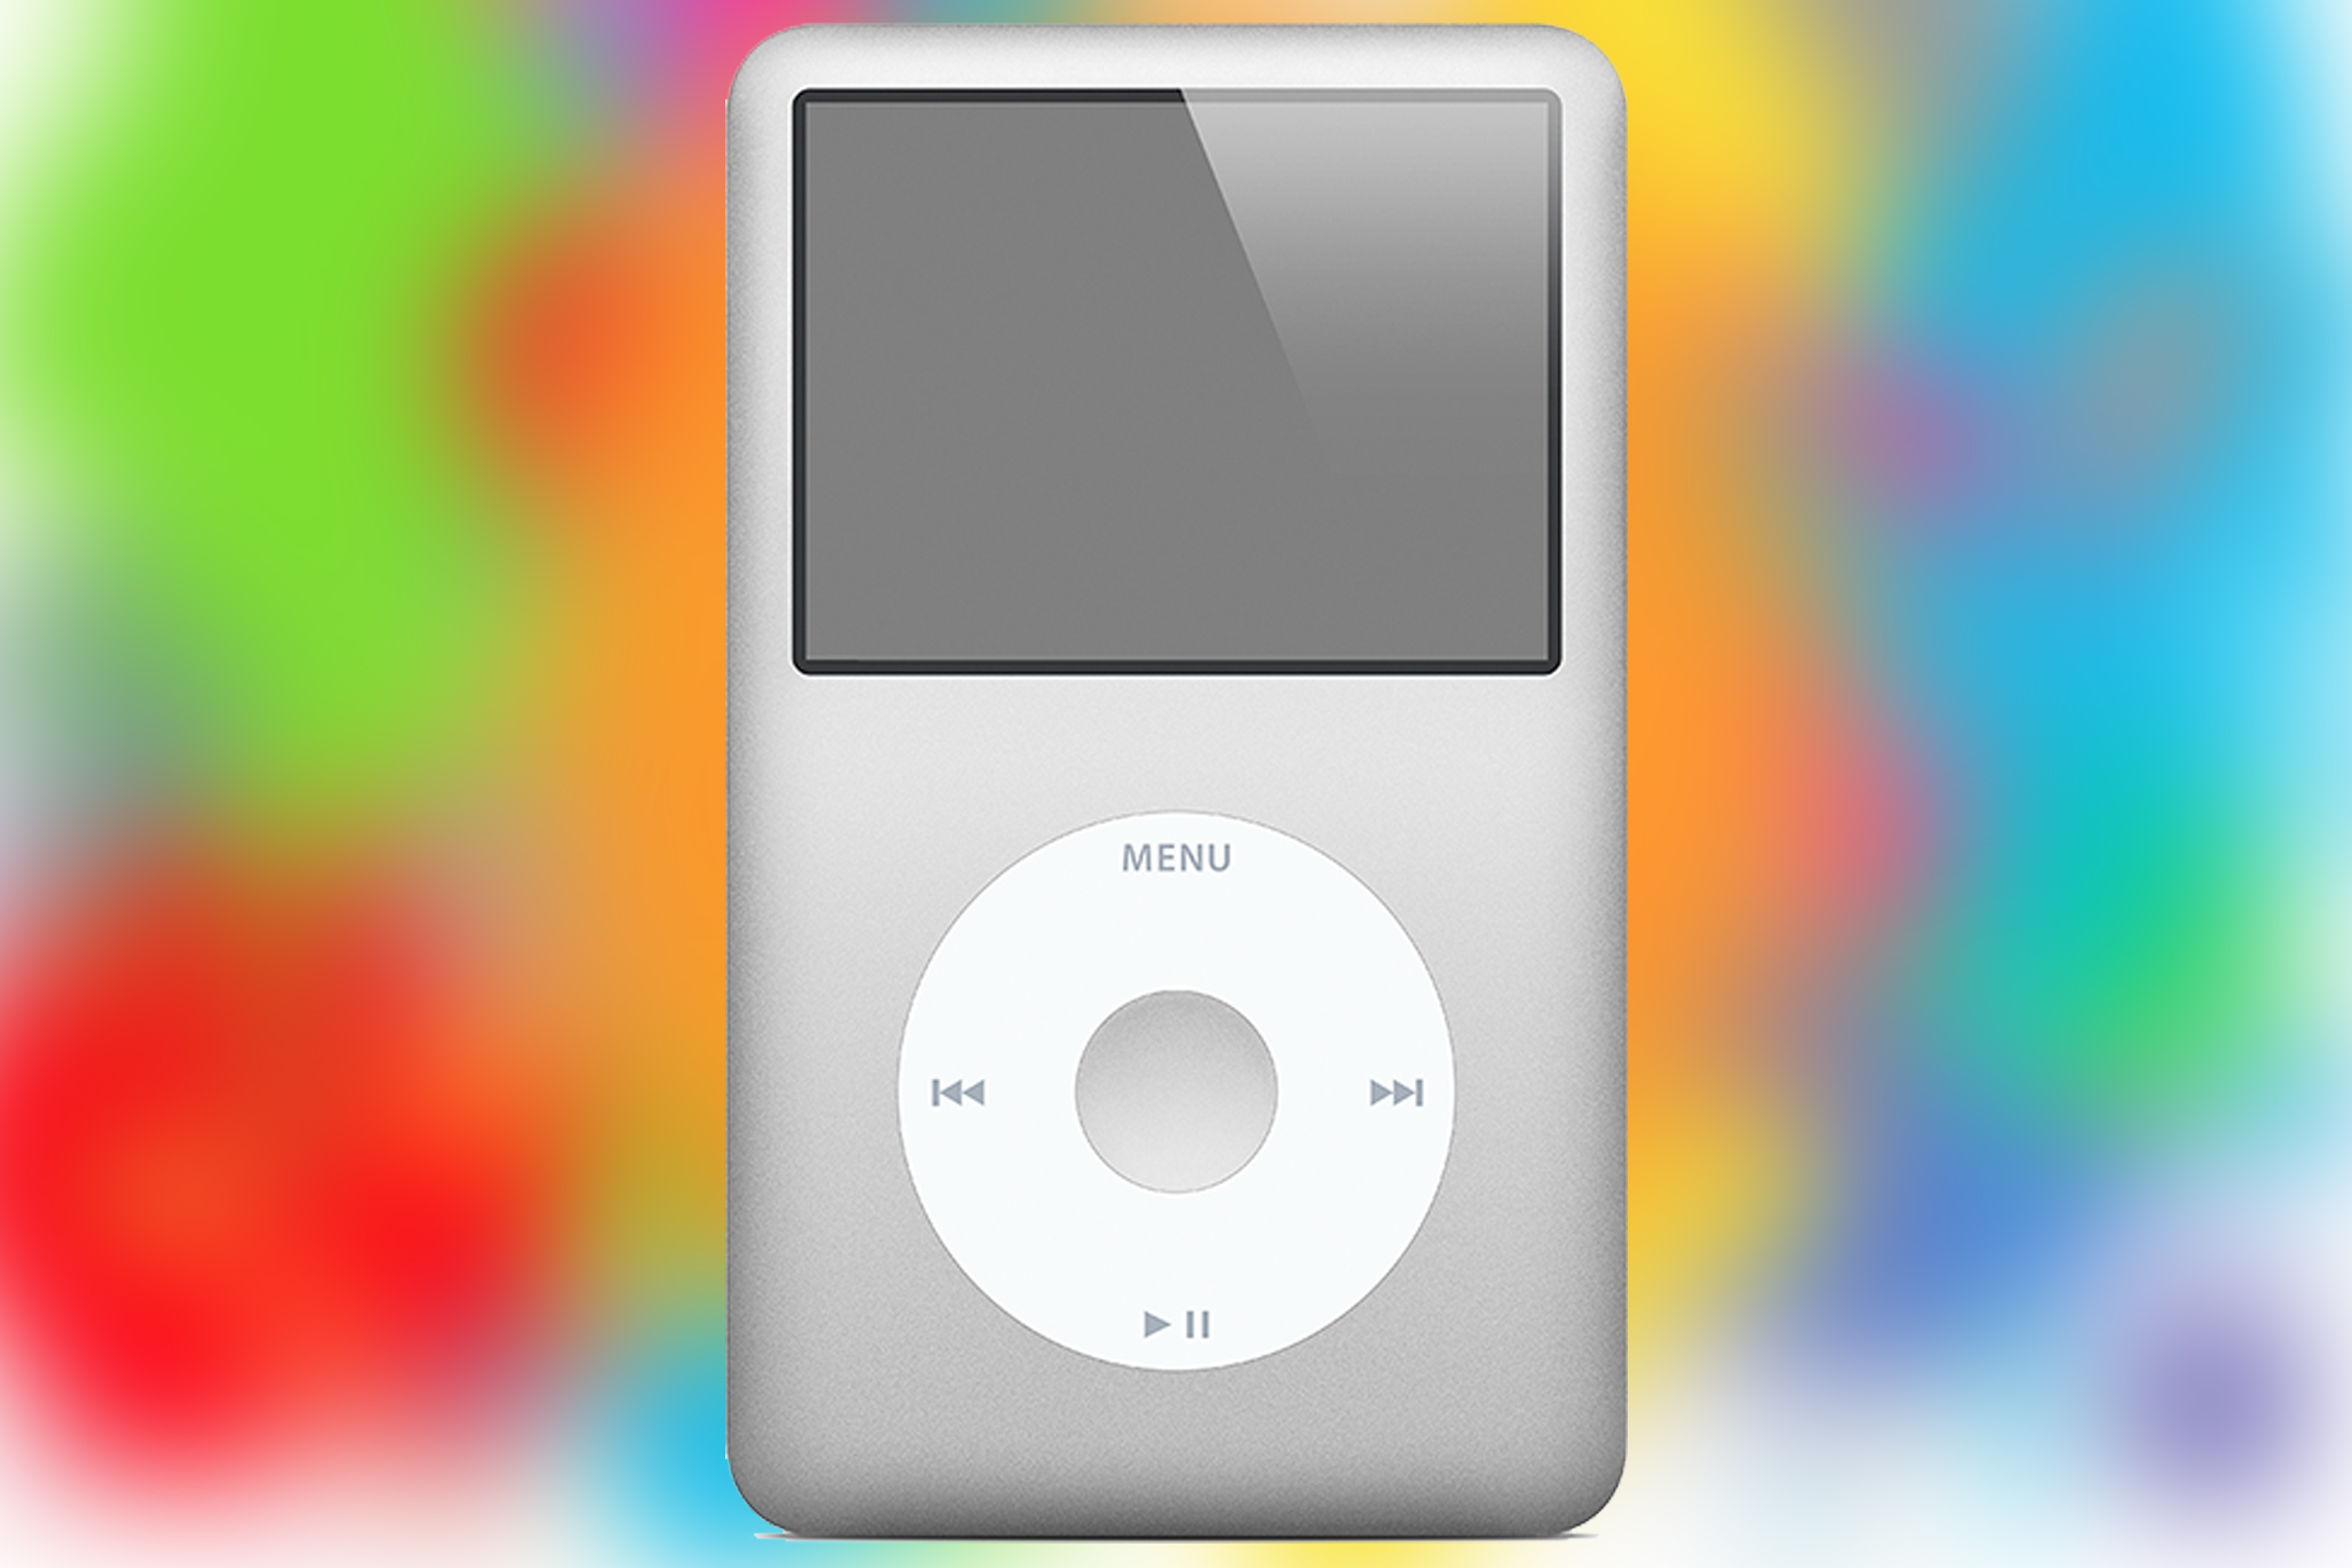  iPod classic